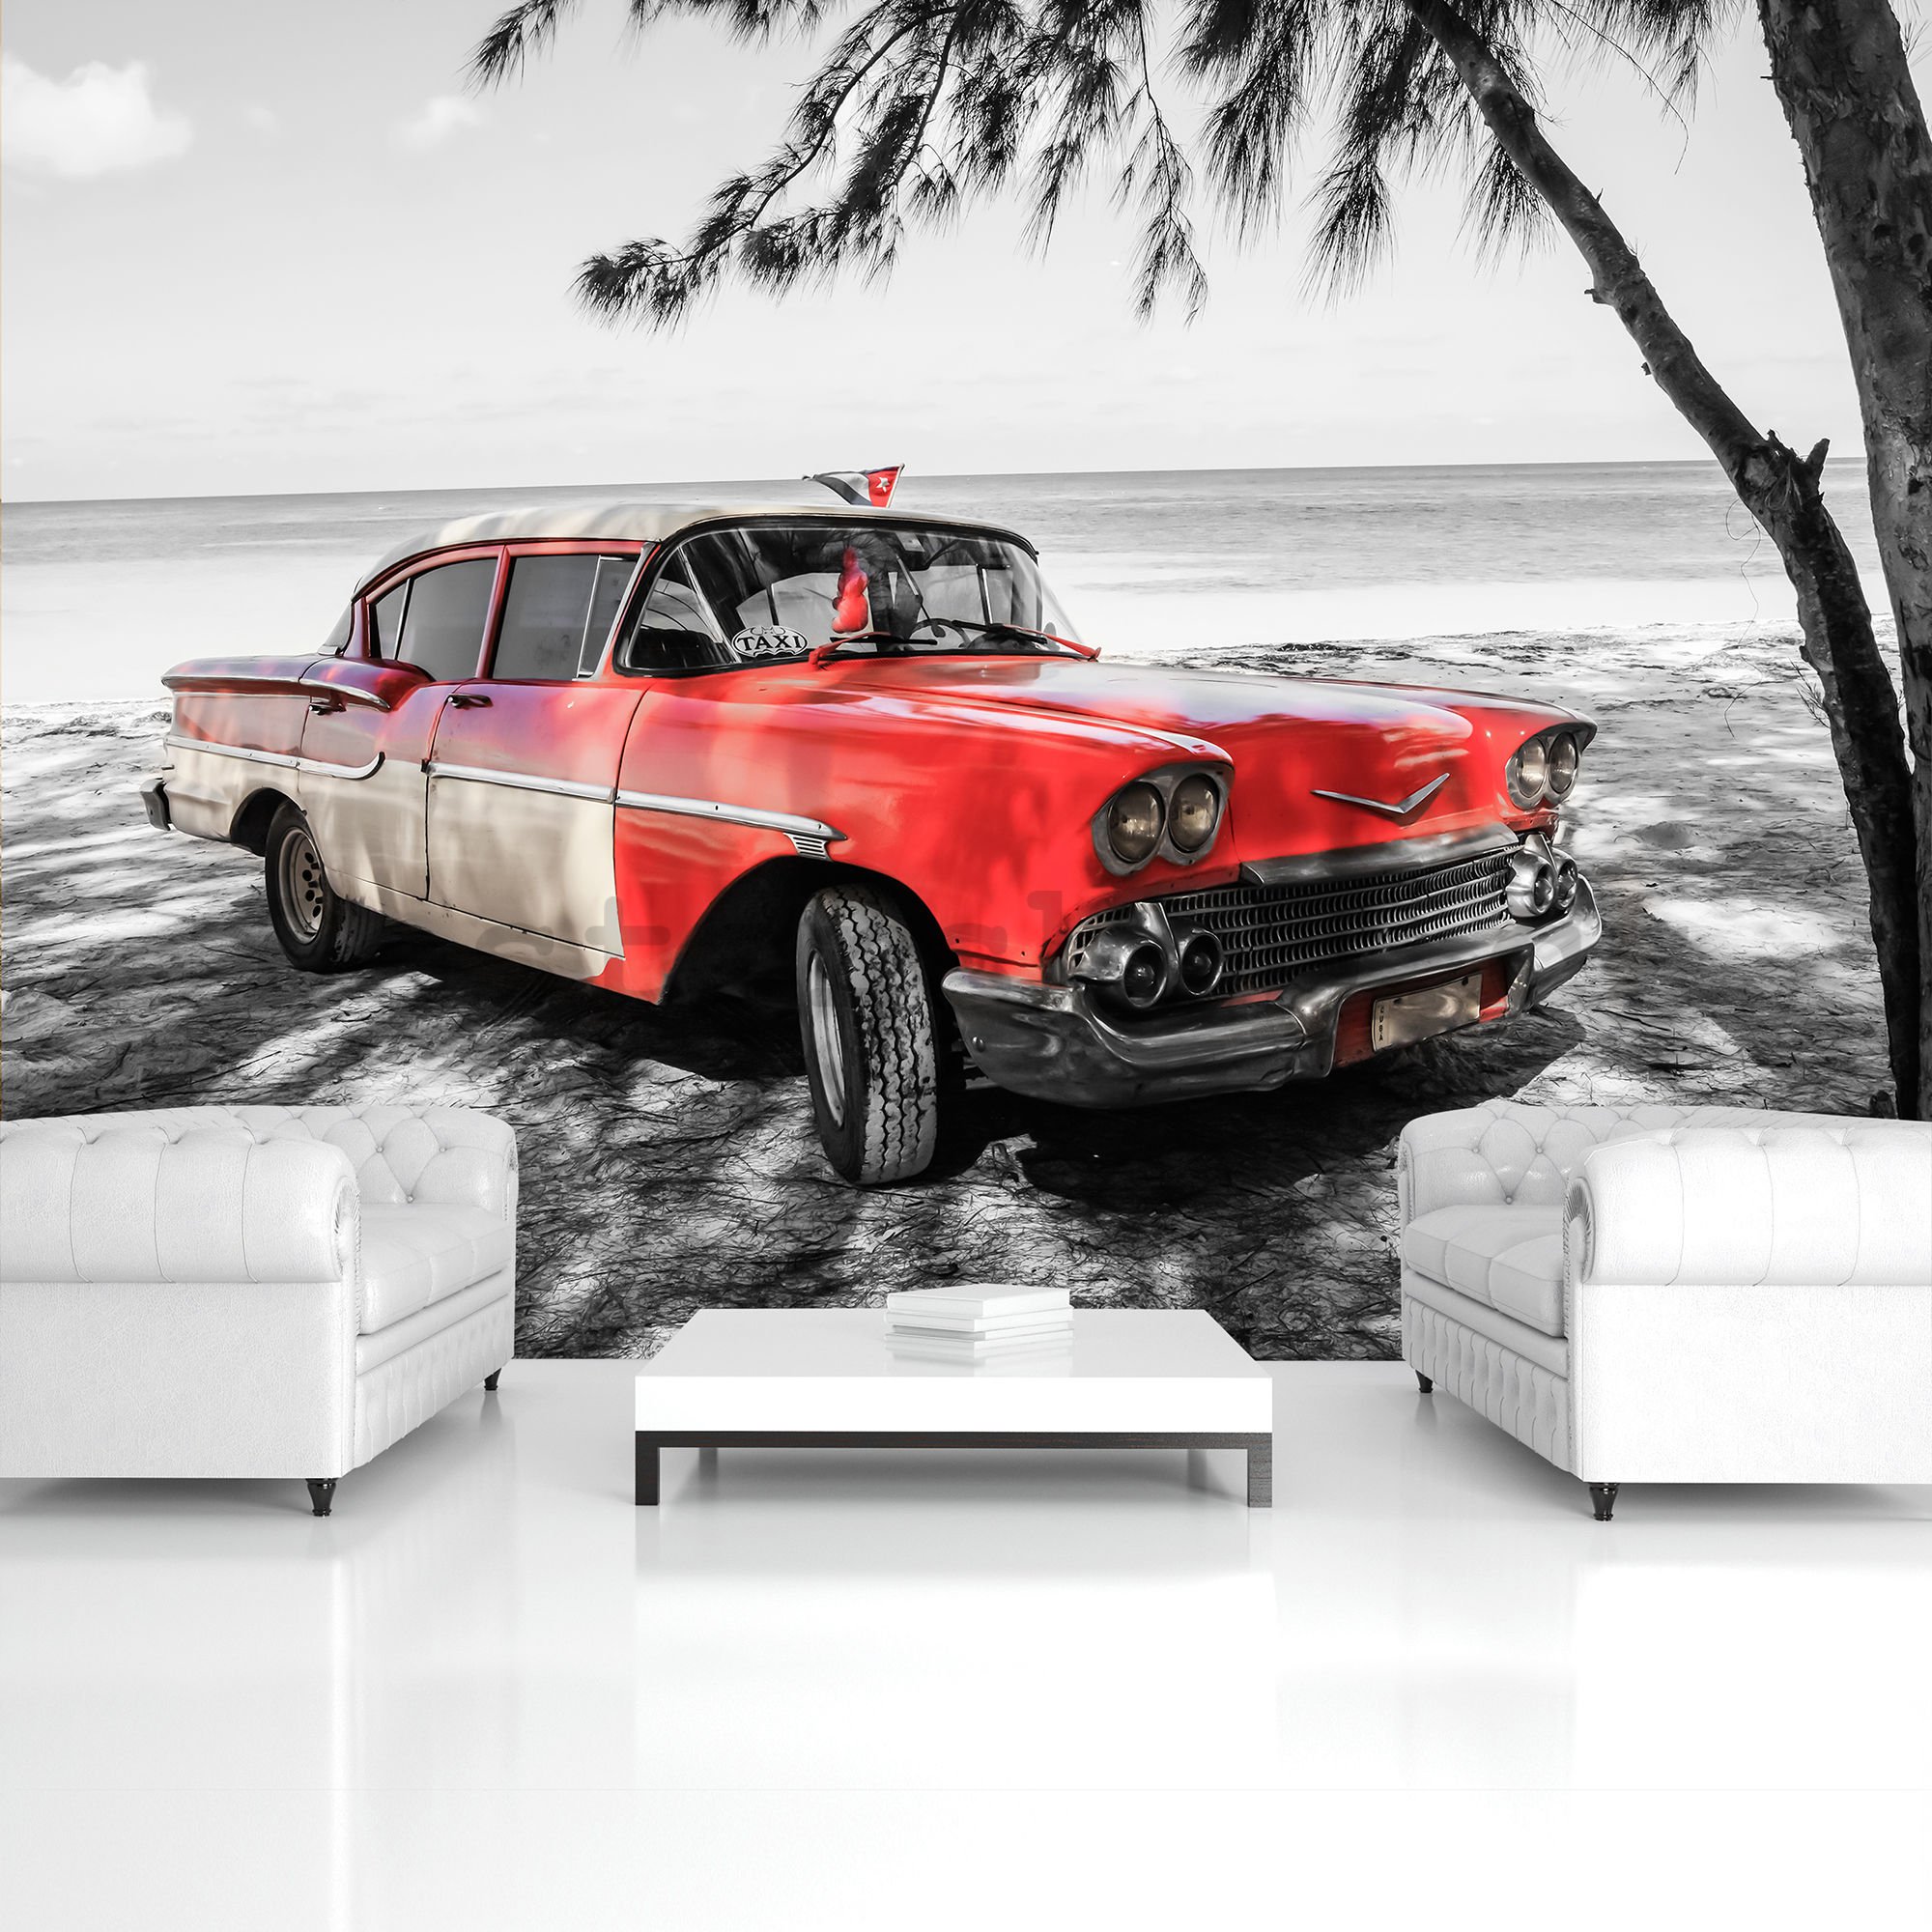 Fototapeta: Kuba červené auto u moře - 184x254 cm